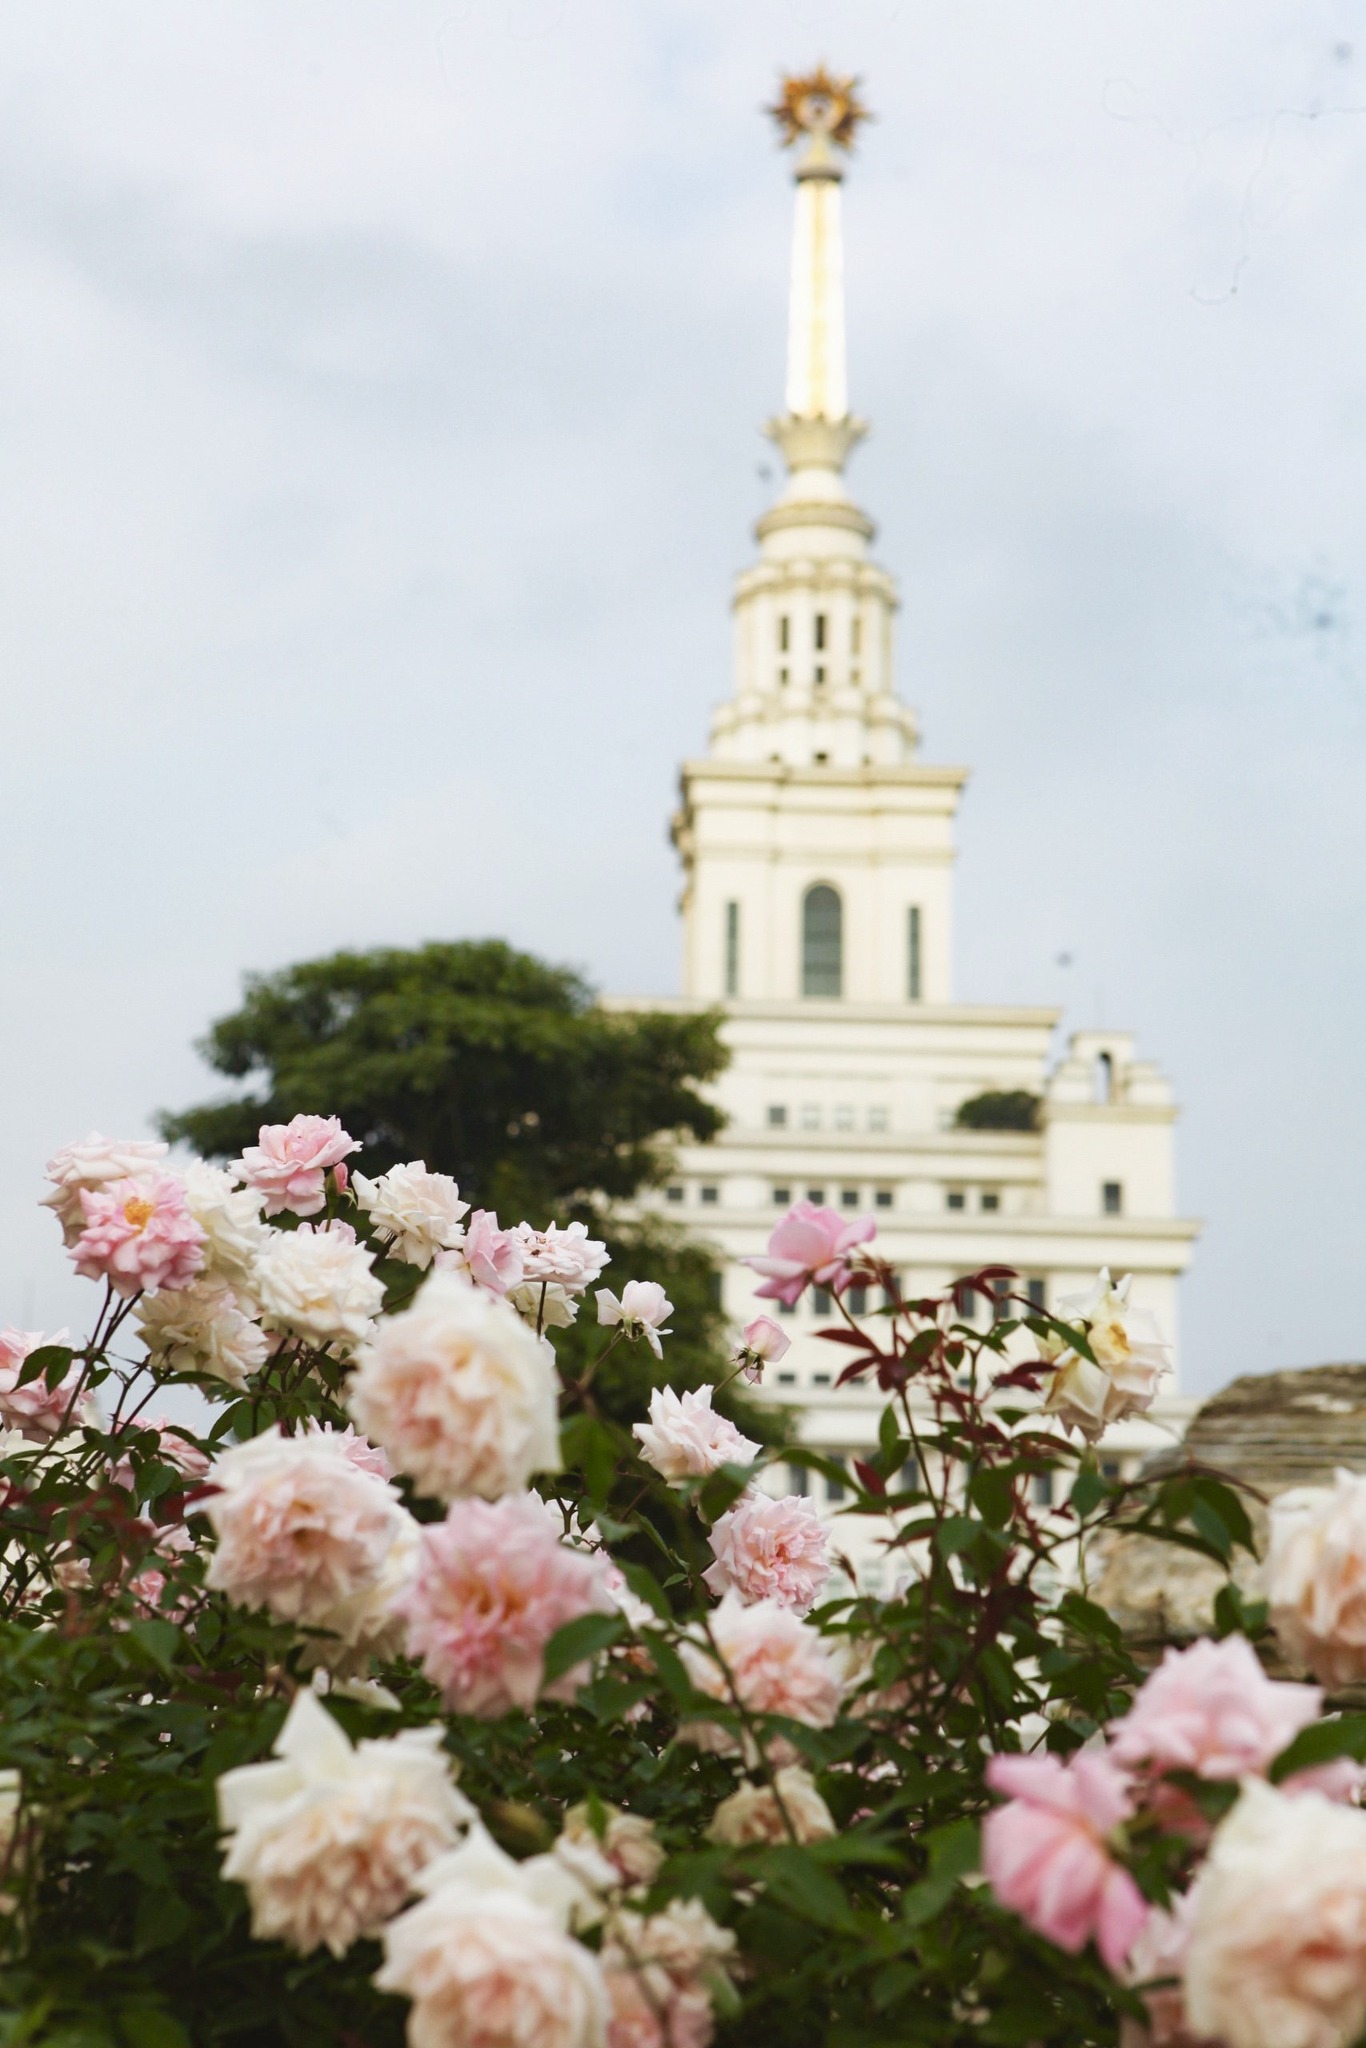 Trường đại học gây sốt với vườn hồng hàng trăm loại đẹp như cổ tích: Chỉ ngắm thôi cũng đã đầy cảm hứng học tập- Ảnh 13.